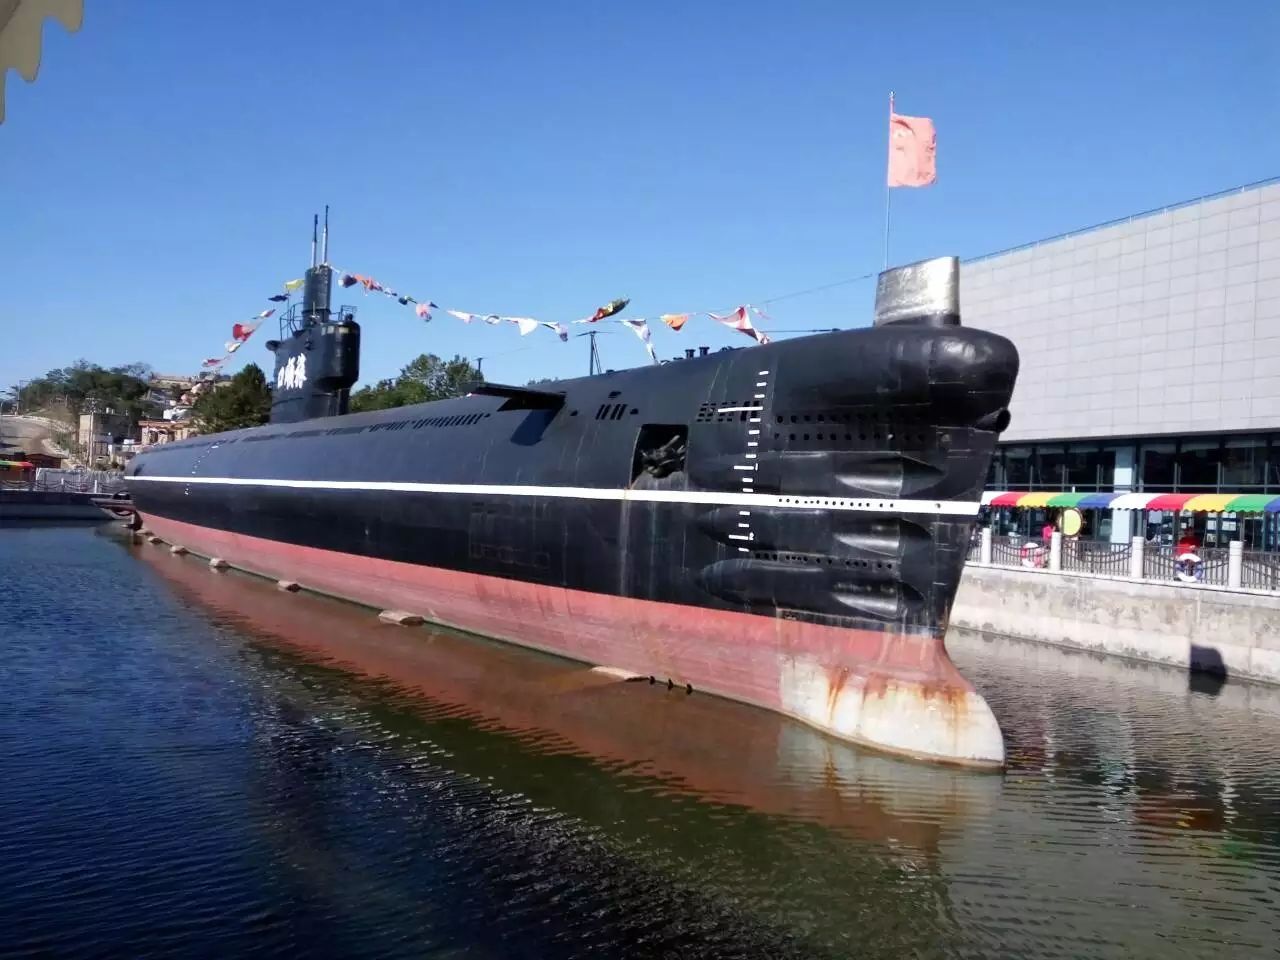 【携程攻略】旅顺口区旅顺潜艇博物馆景点,可以登上潜艇看潜艇的内部最激动人心的就是潜艇巡航体验全是真实的模…